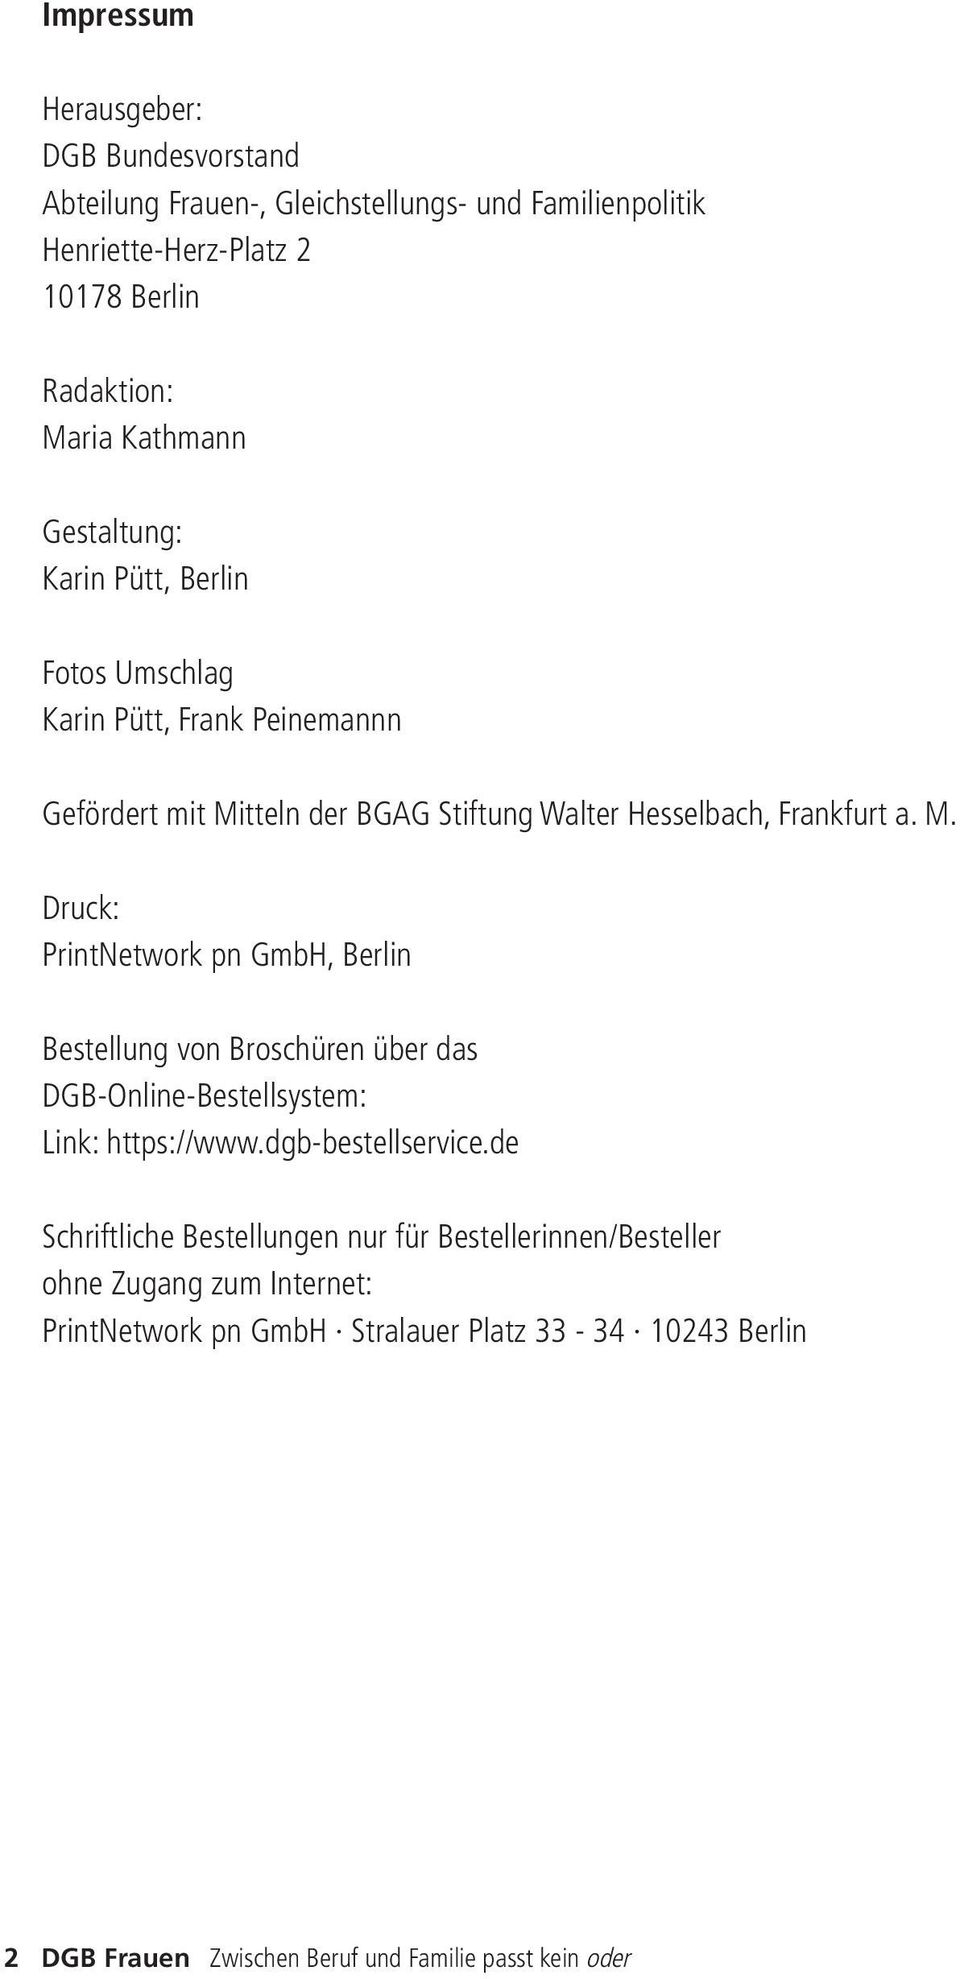 tteln der BGAG Stiftung Walter Hesselbach, Frankfurt a. M.